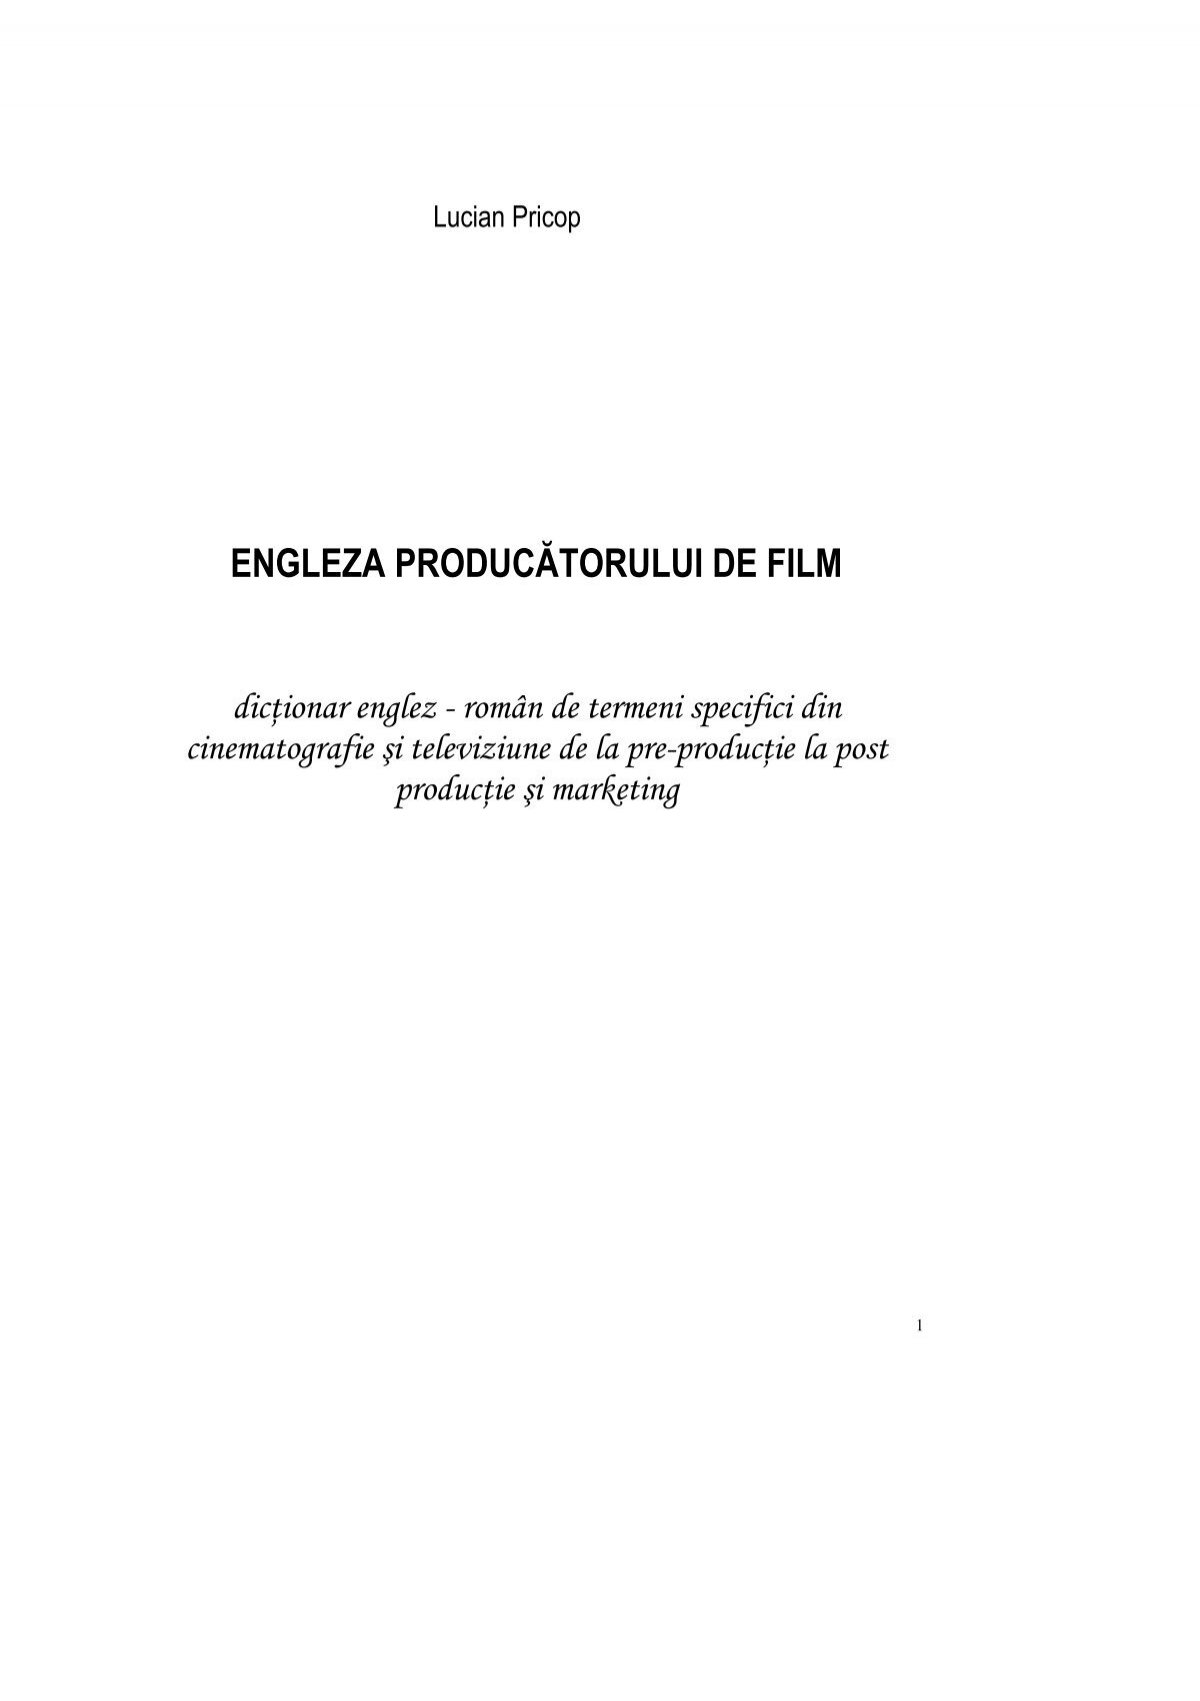 Engleza Producătorului De Film